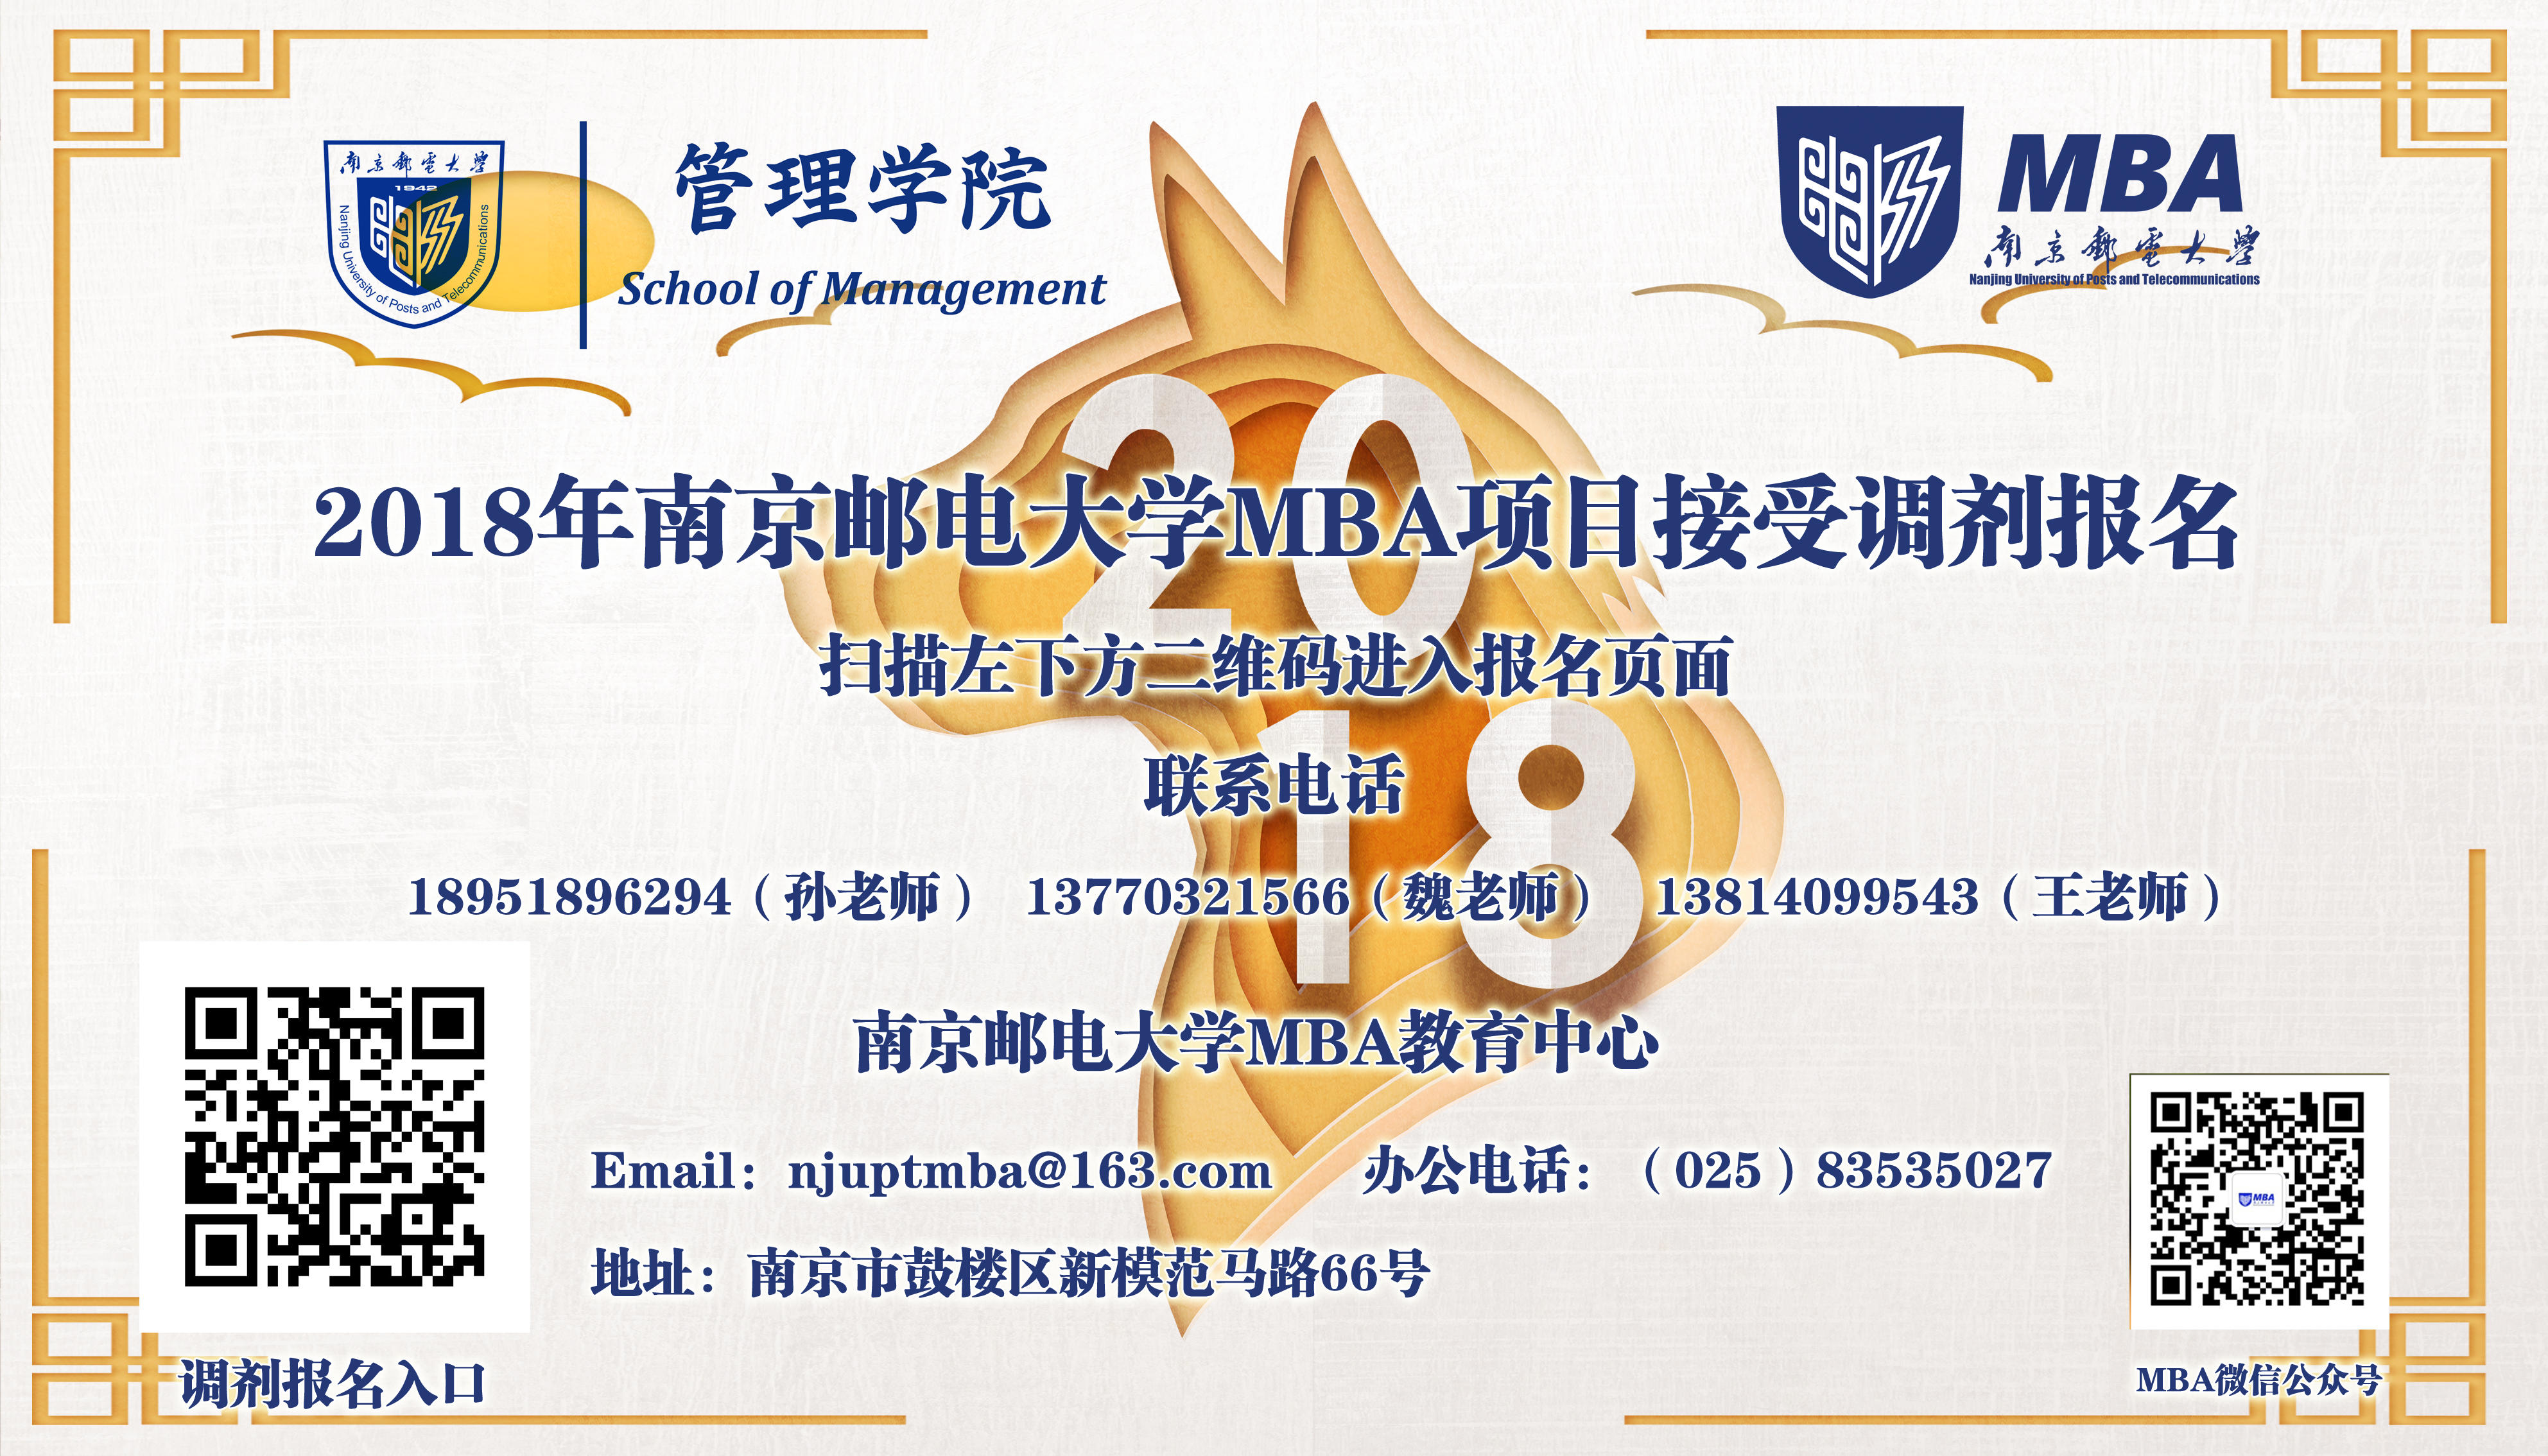 南京邮电大学2018年MBA项目接受调剂复试公告